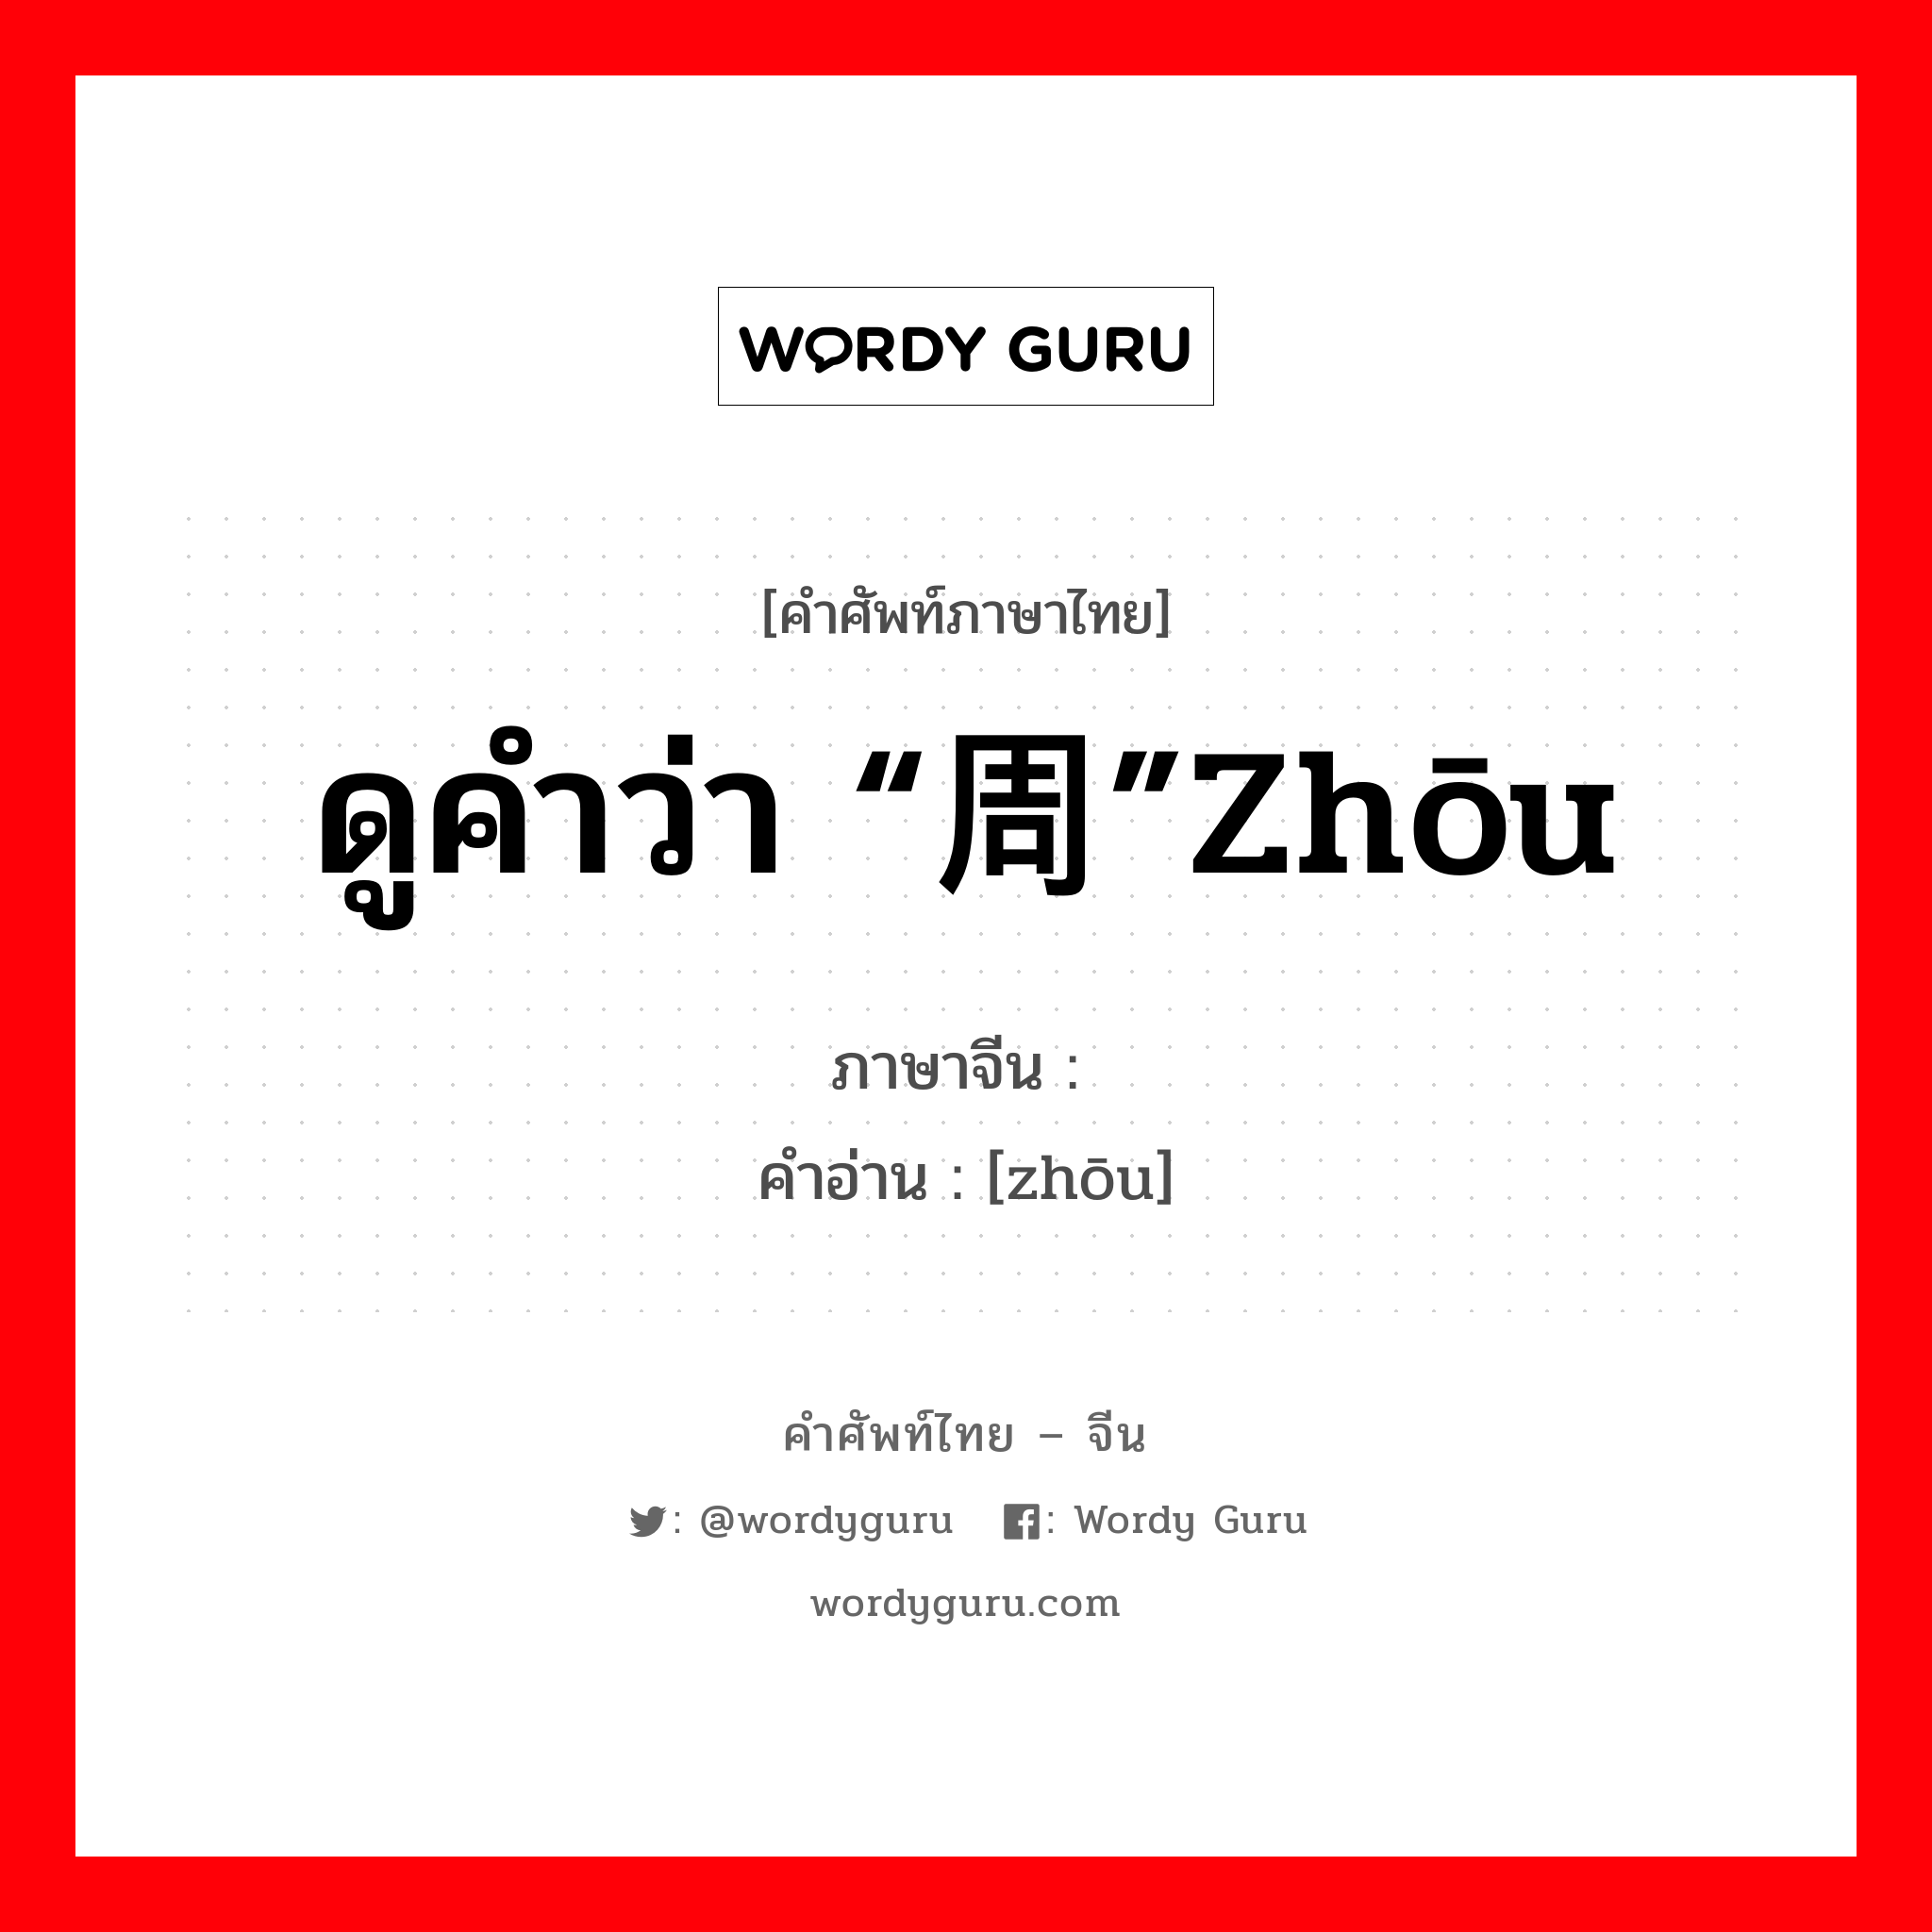 ดูคำว่า “周”zhōu ภาษาจีนคืออะไร, คำศัพท์ภาษาไทย - จีน ดูคำว่า “周”zhōu ภาษาจีน 赒 คำอ่าน [zhōu]